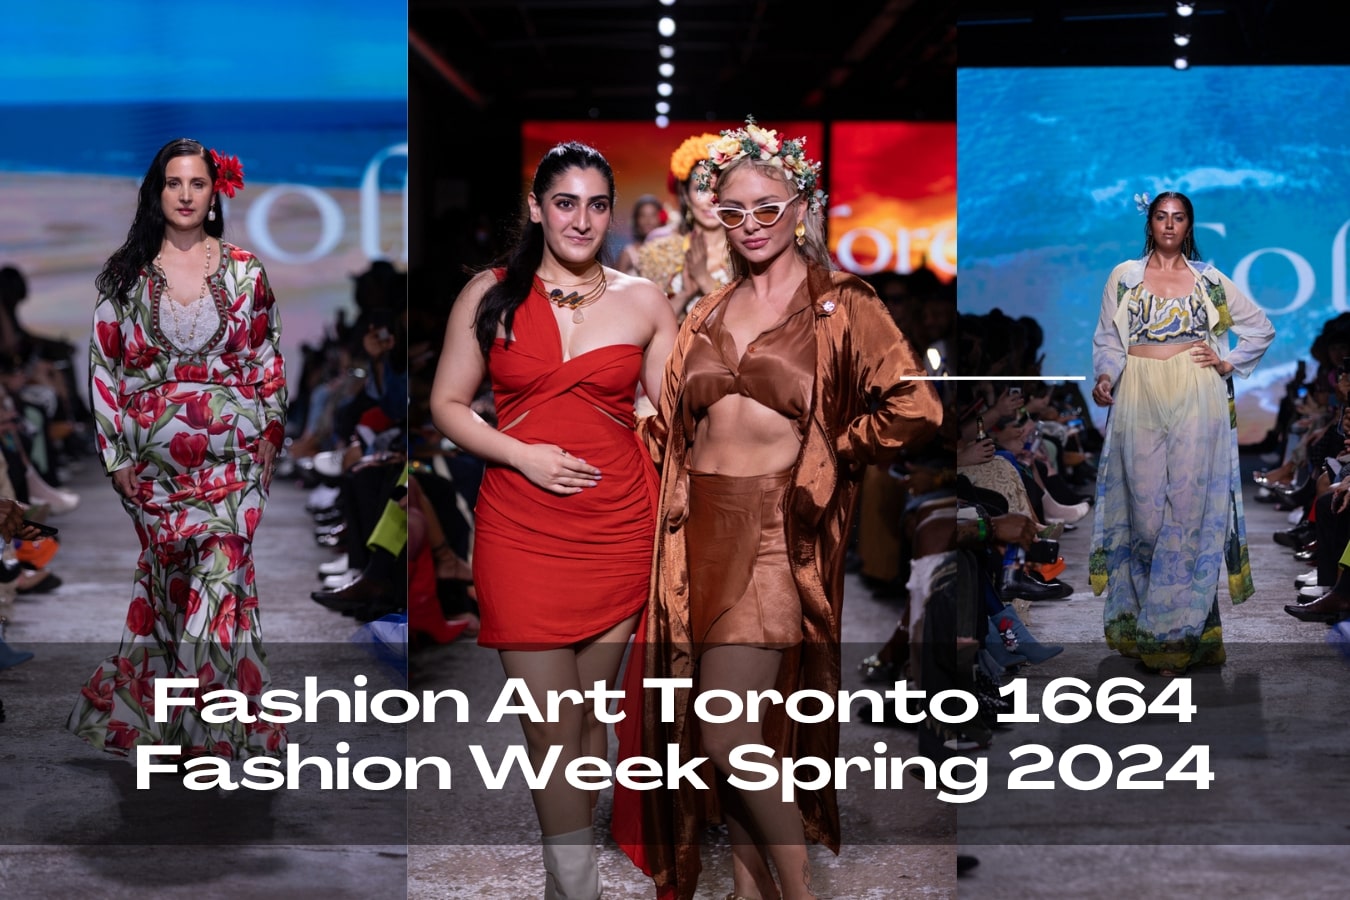 Fashion Art Toronto 1664 Fashion Week Spring 2024 | Indian designer fashion blogging